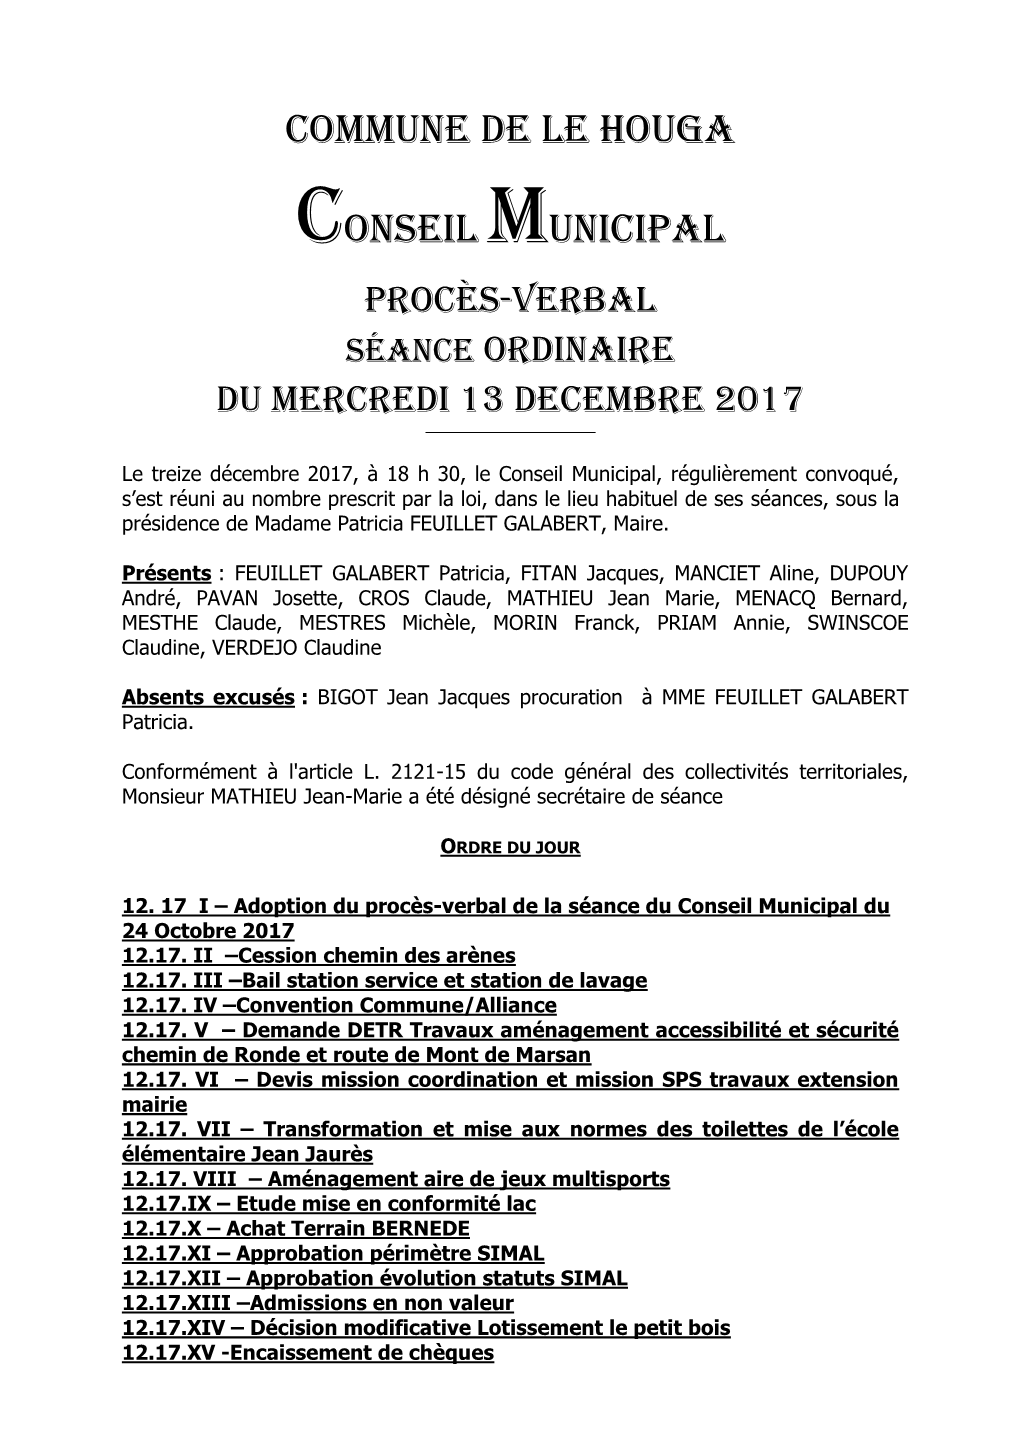 Commune De Le Houga Conseil Municipal